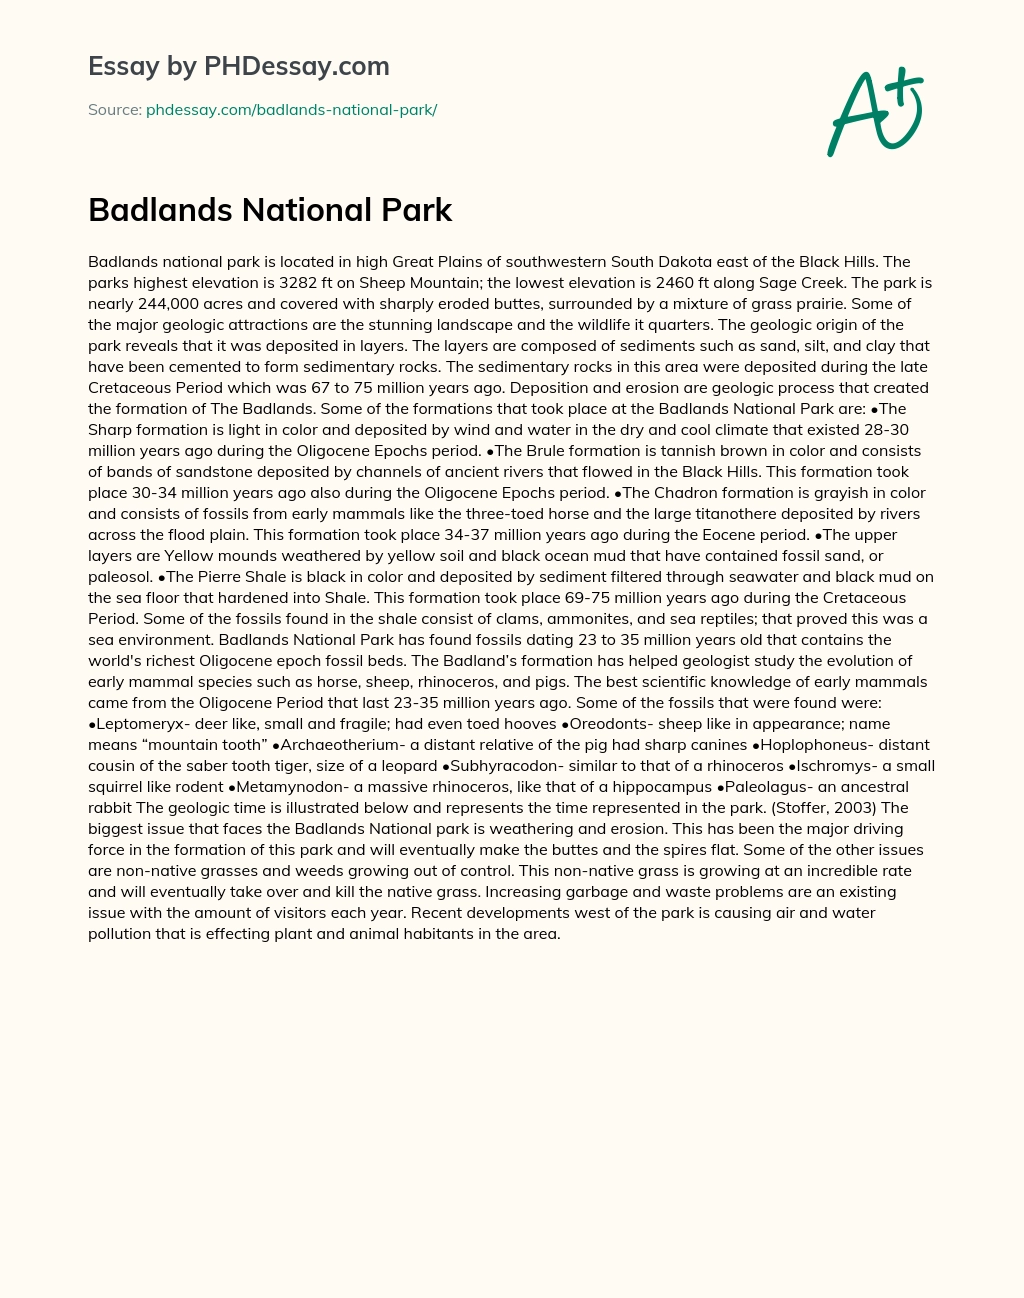 Badlands National Park essay